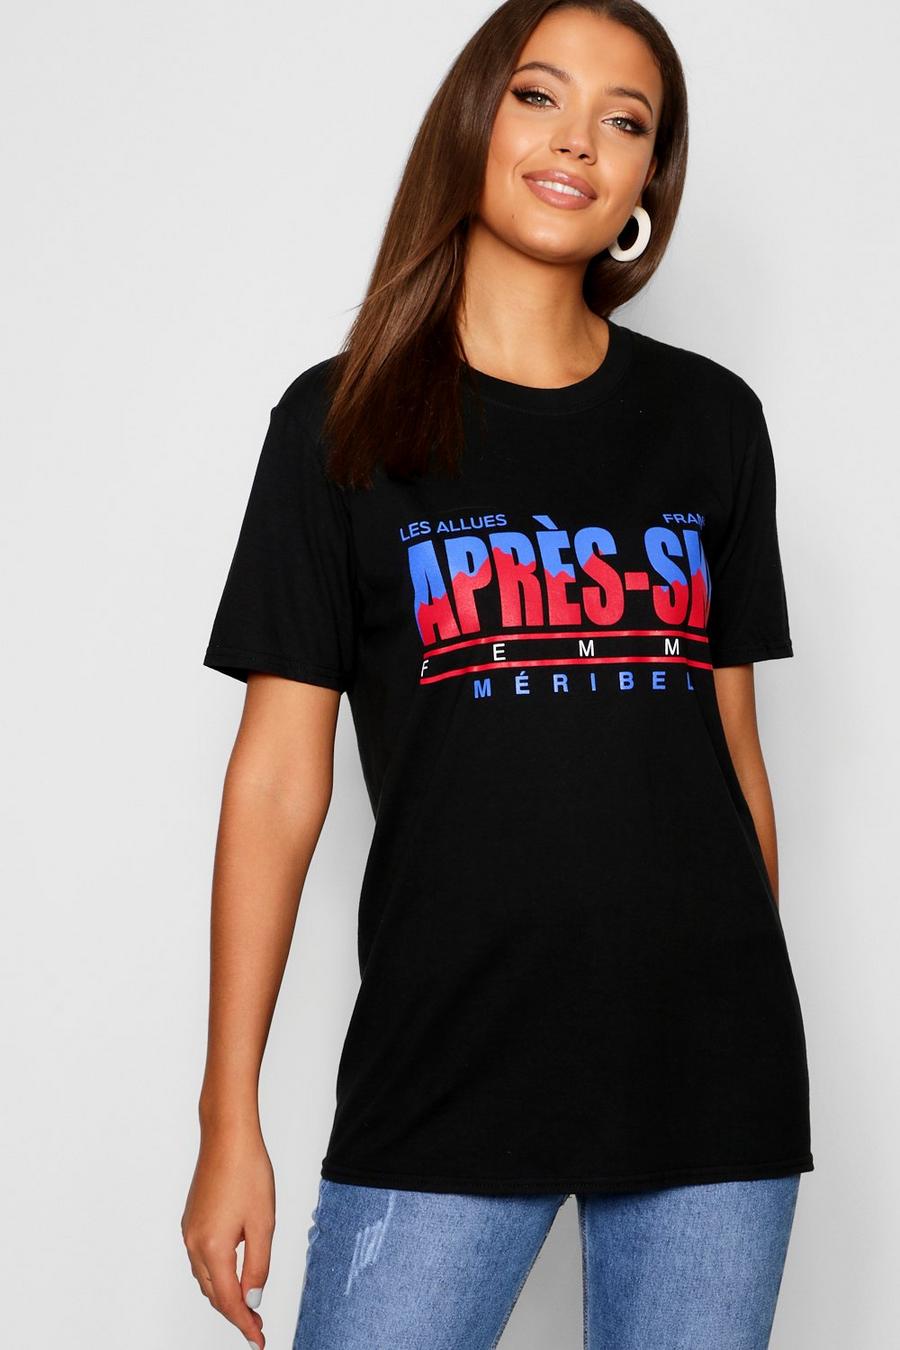 Camiseta con eslogan “Apres Ski” Tall image number 1